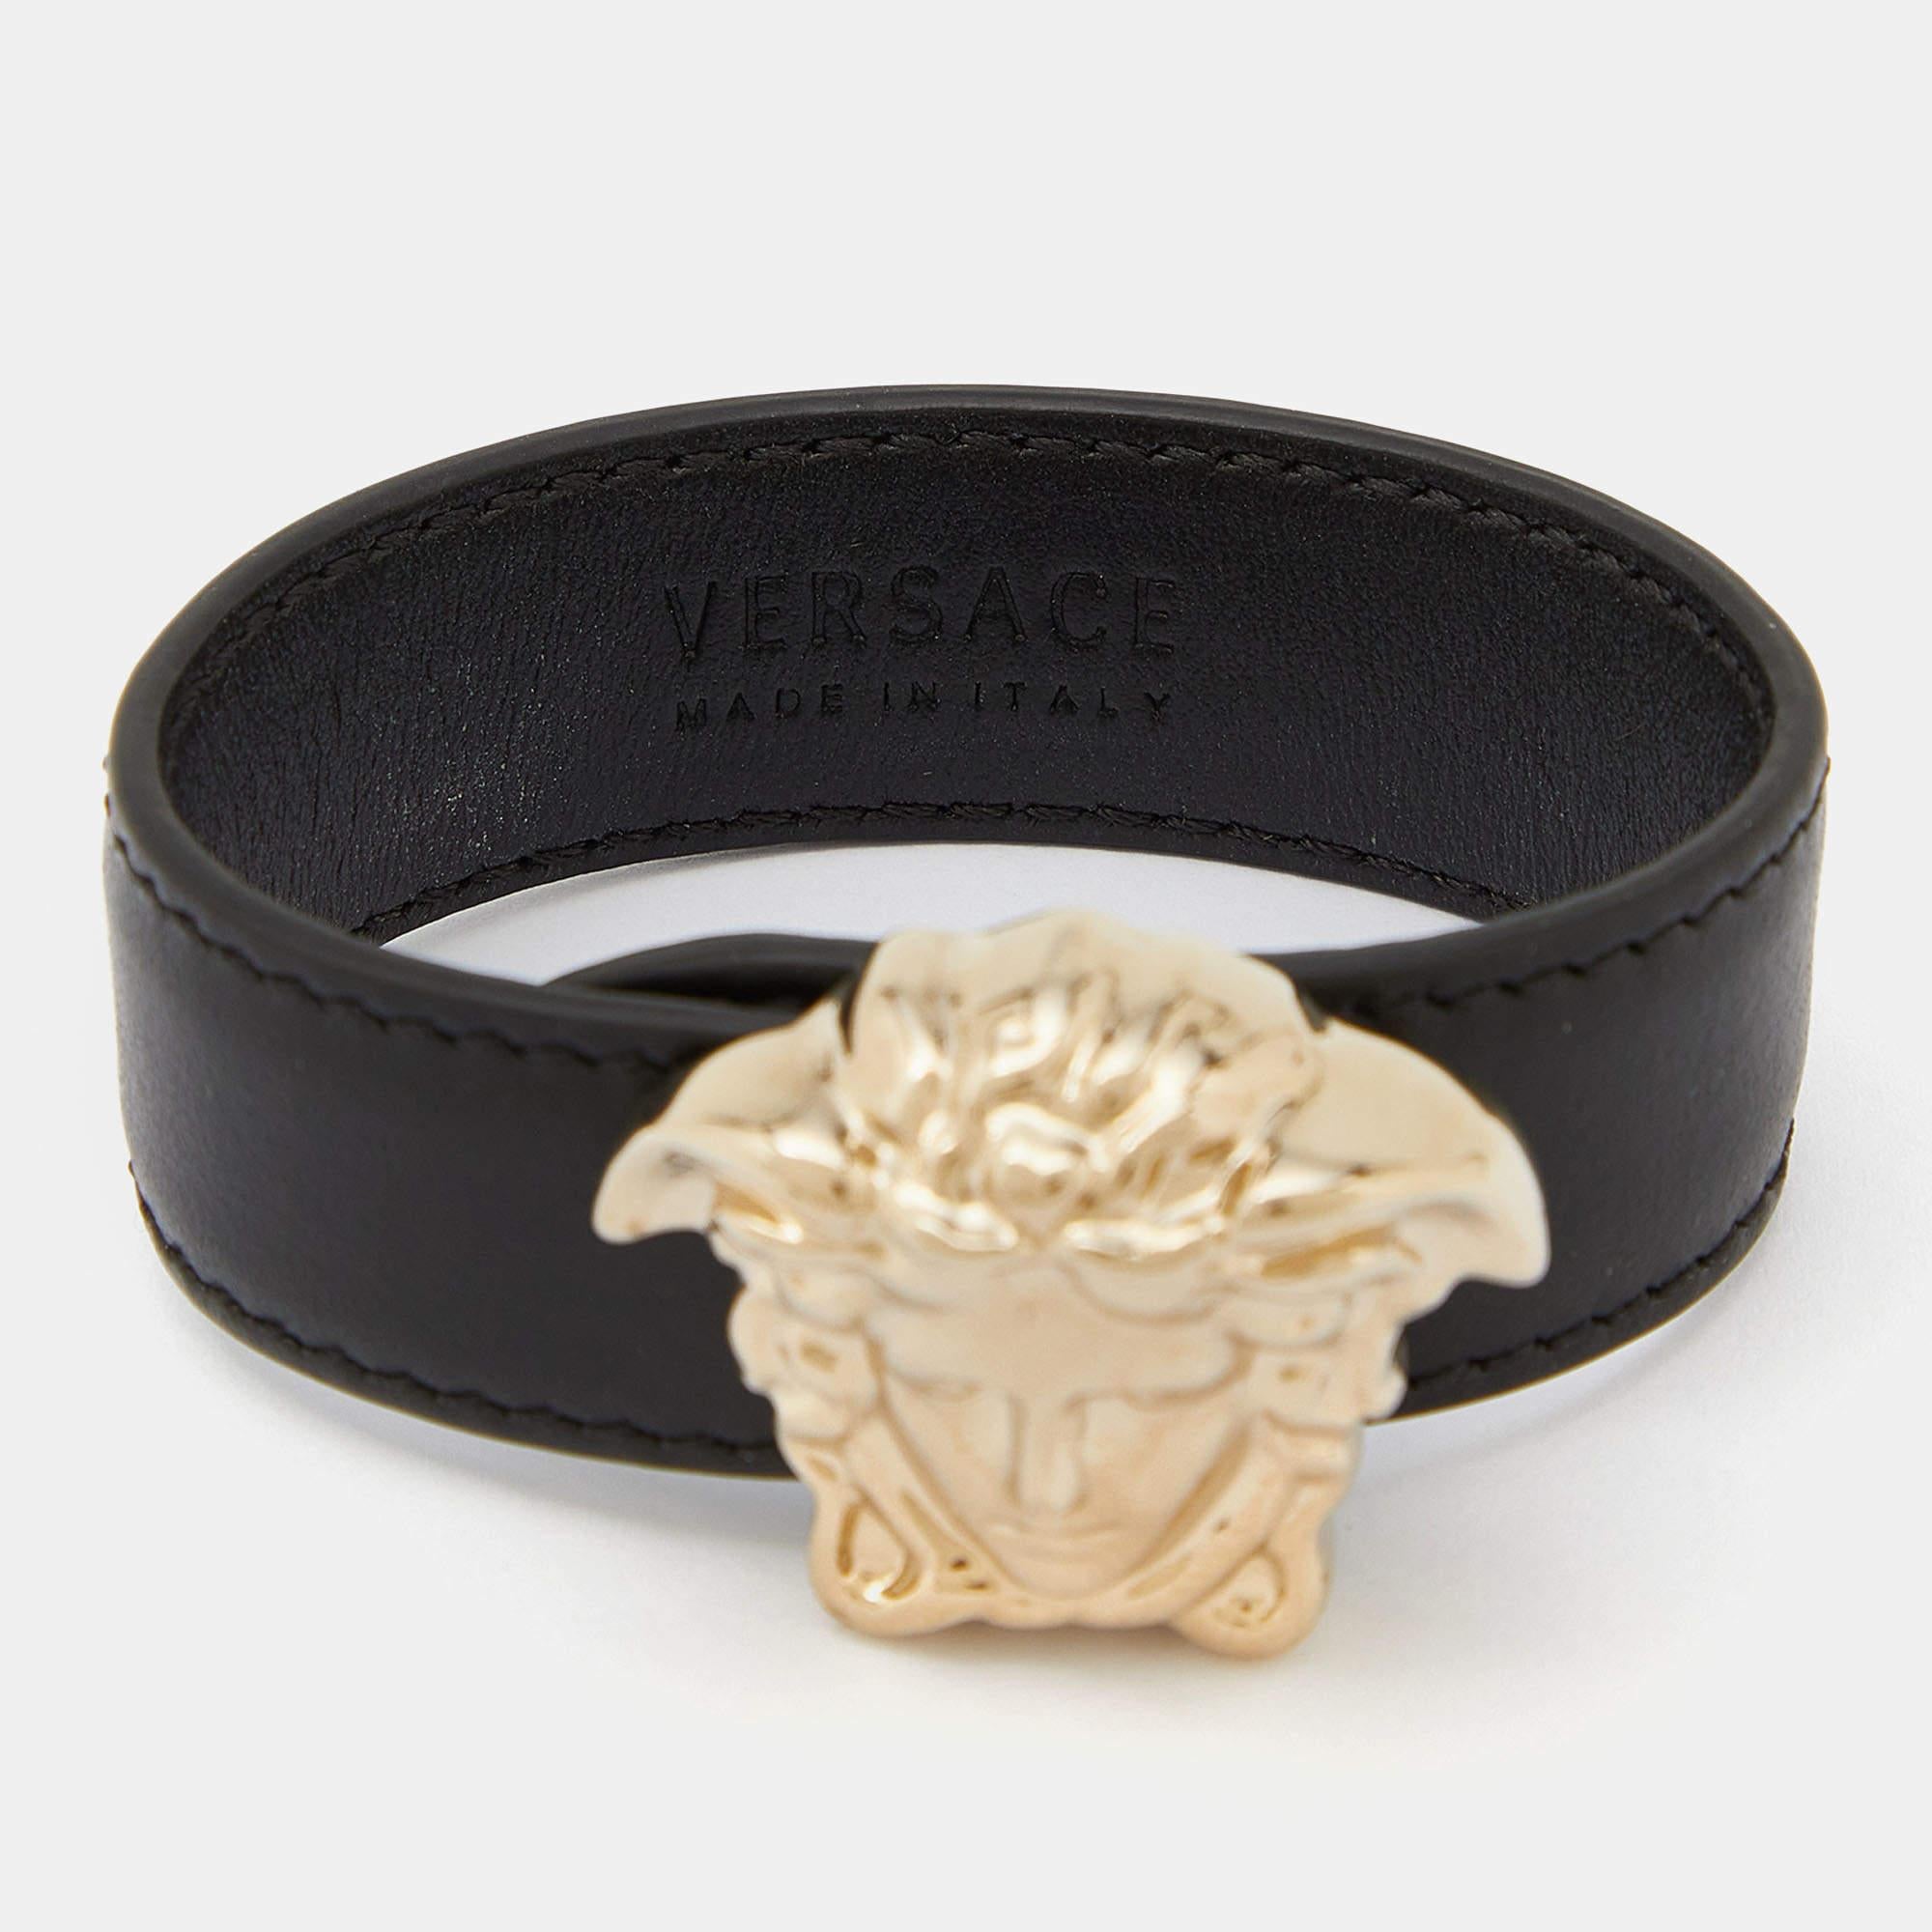 D'un design ultra-moderne et chic, ce bracelet Versace témoigne d'une mode contemporaine. Le design Lux est agrémenté d'éléments distincts qui confèrent à la création une touche de classe. Cette douce pièce sera du plus bel effet lorsqu'elle sera